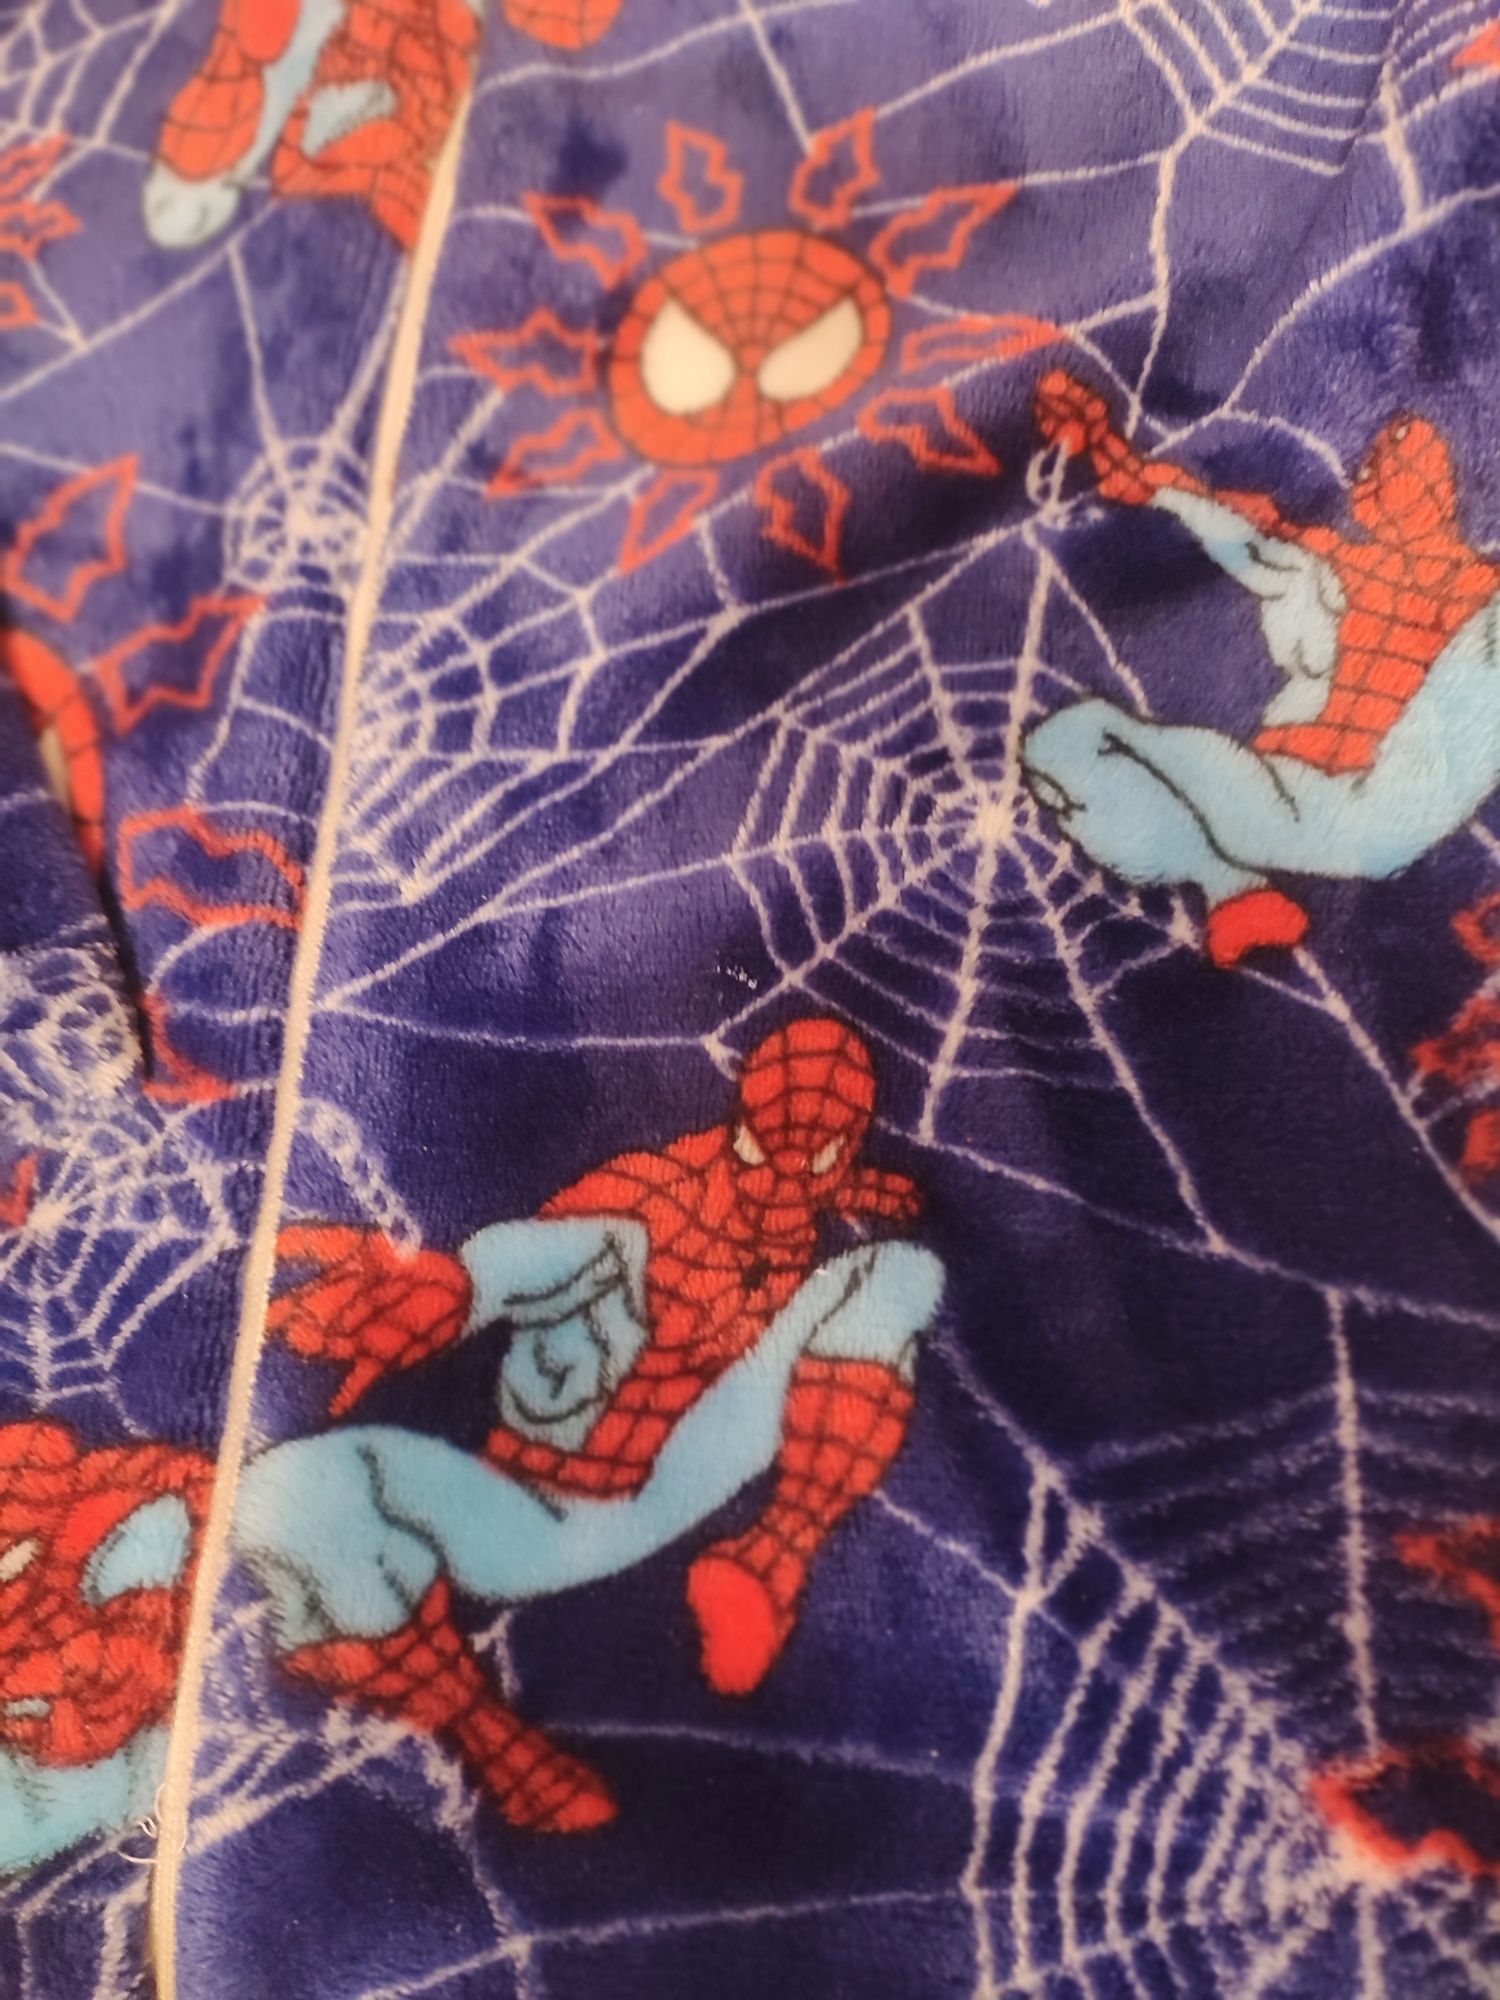 Флісова піжама Чоловік-павук на хлопчика 6-7 років